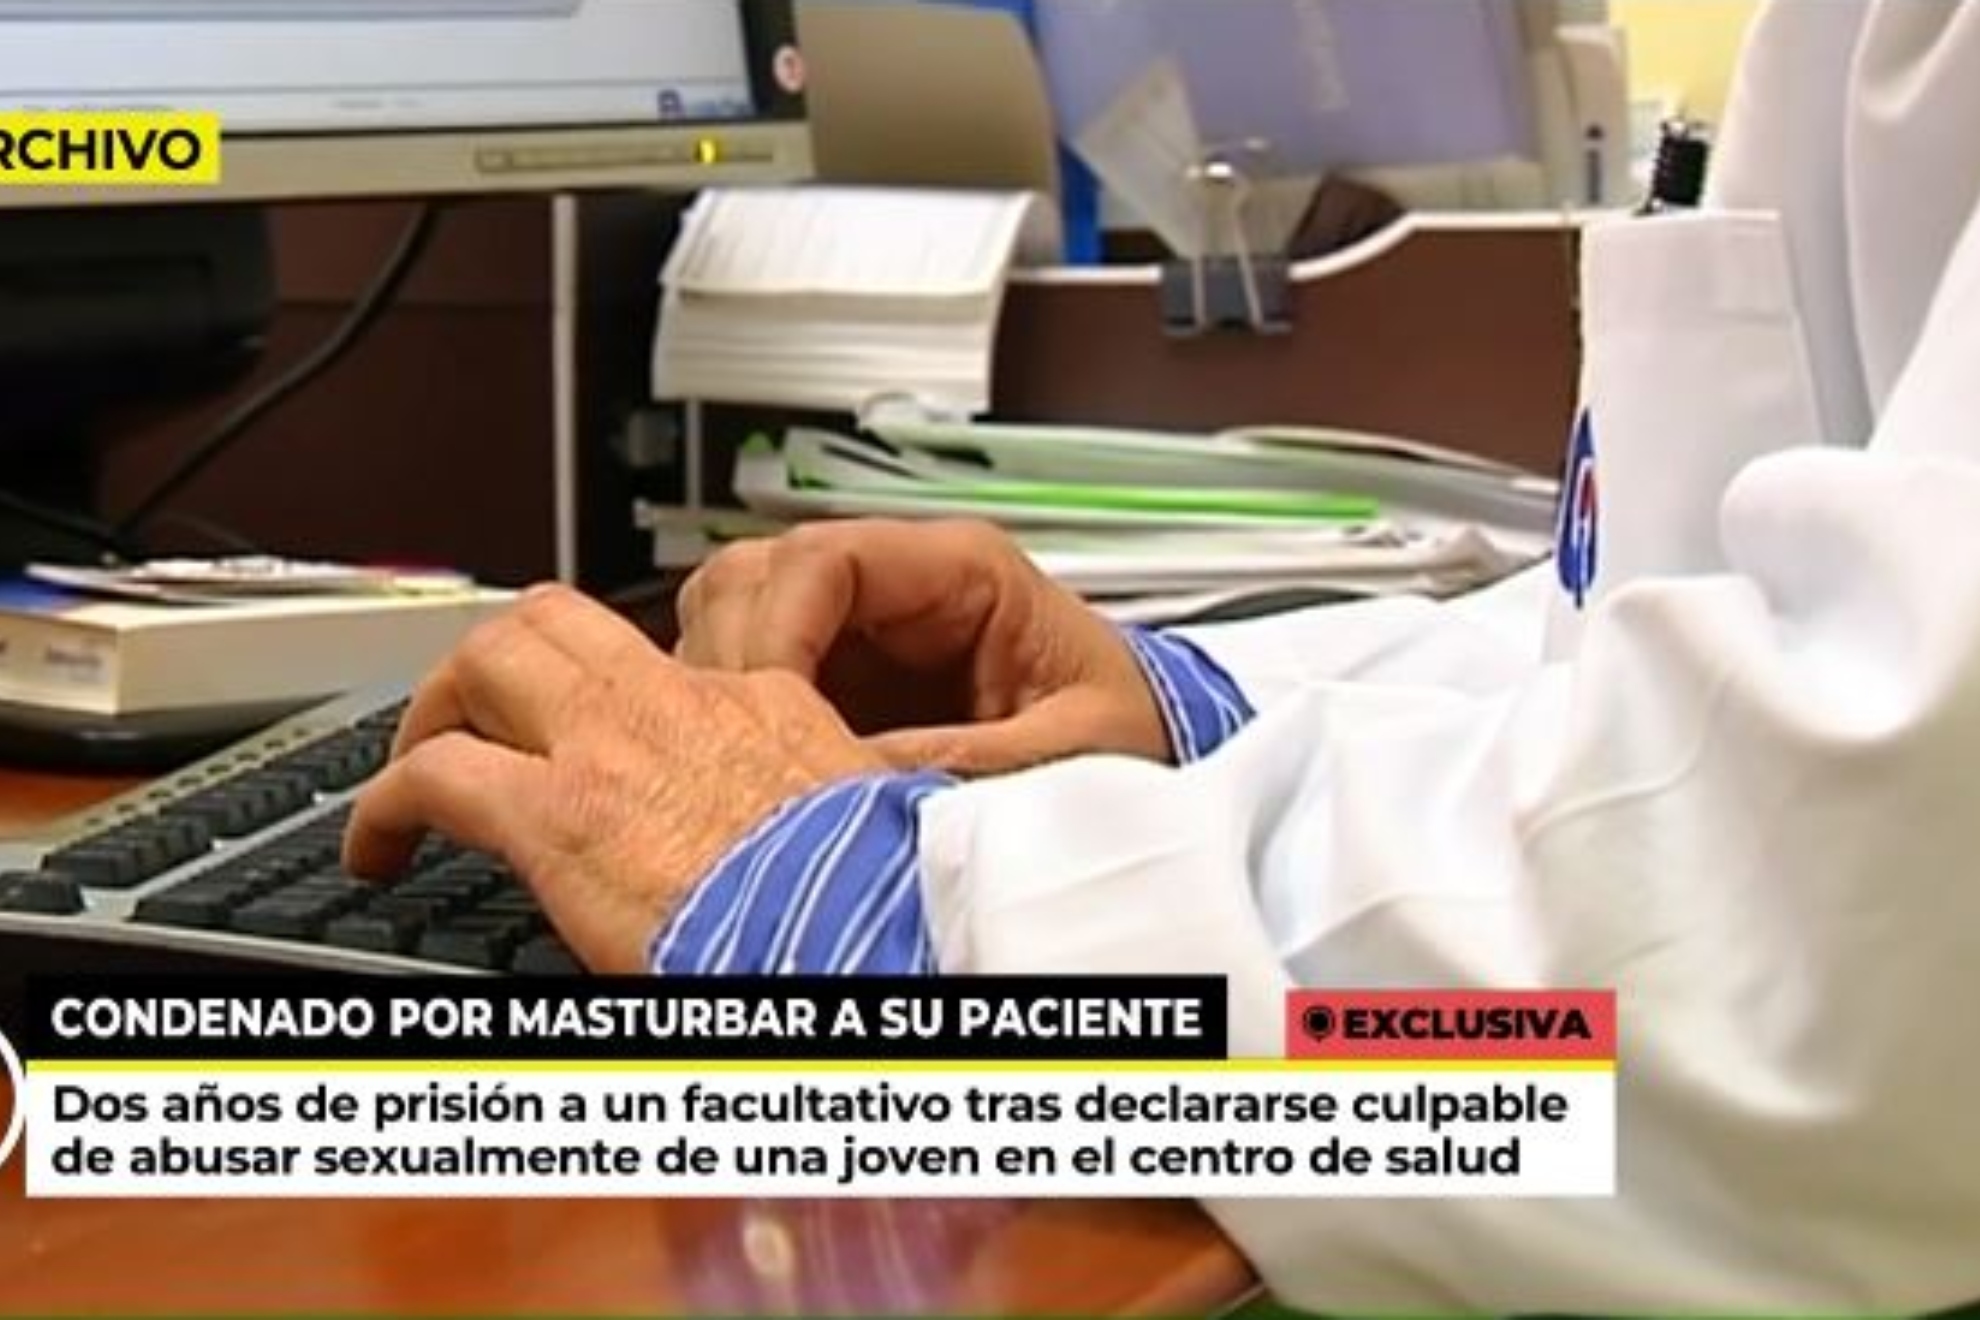 Dos aos de crcel a un mdico por masturbar a una paciente: "Solo quera mejorar su salud"